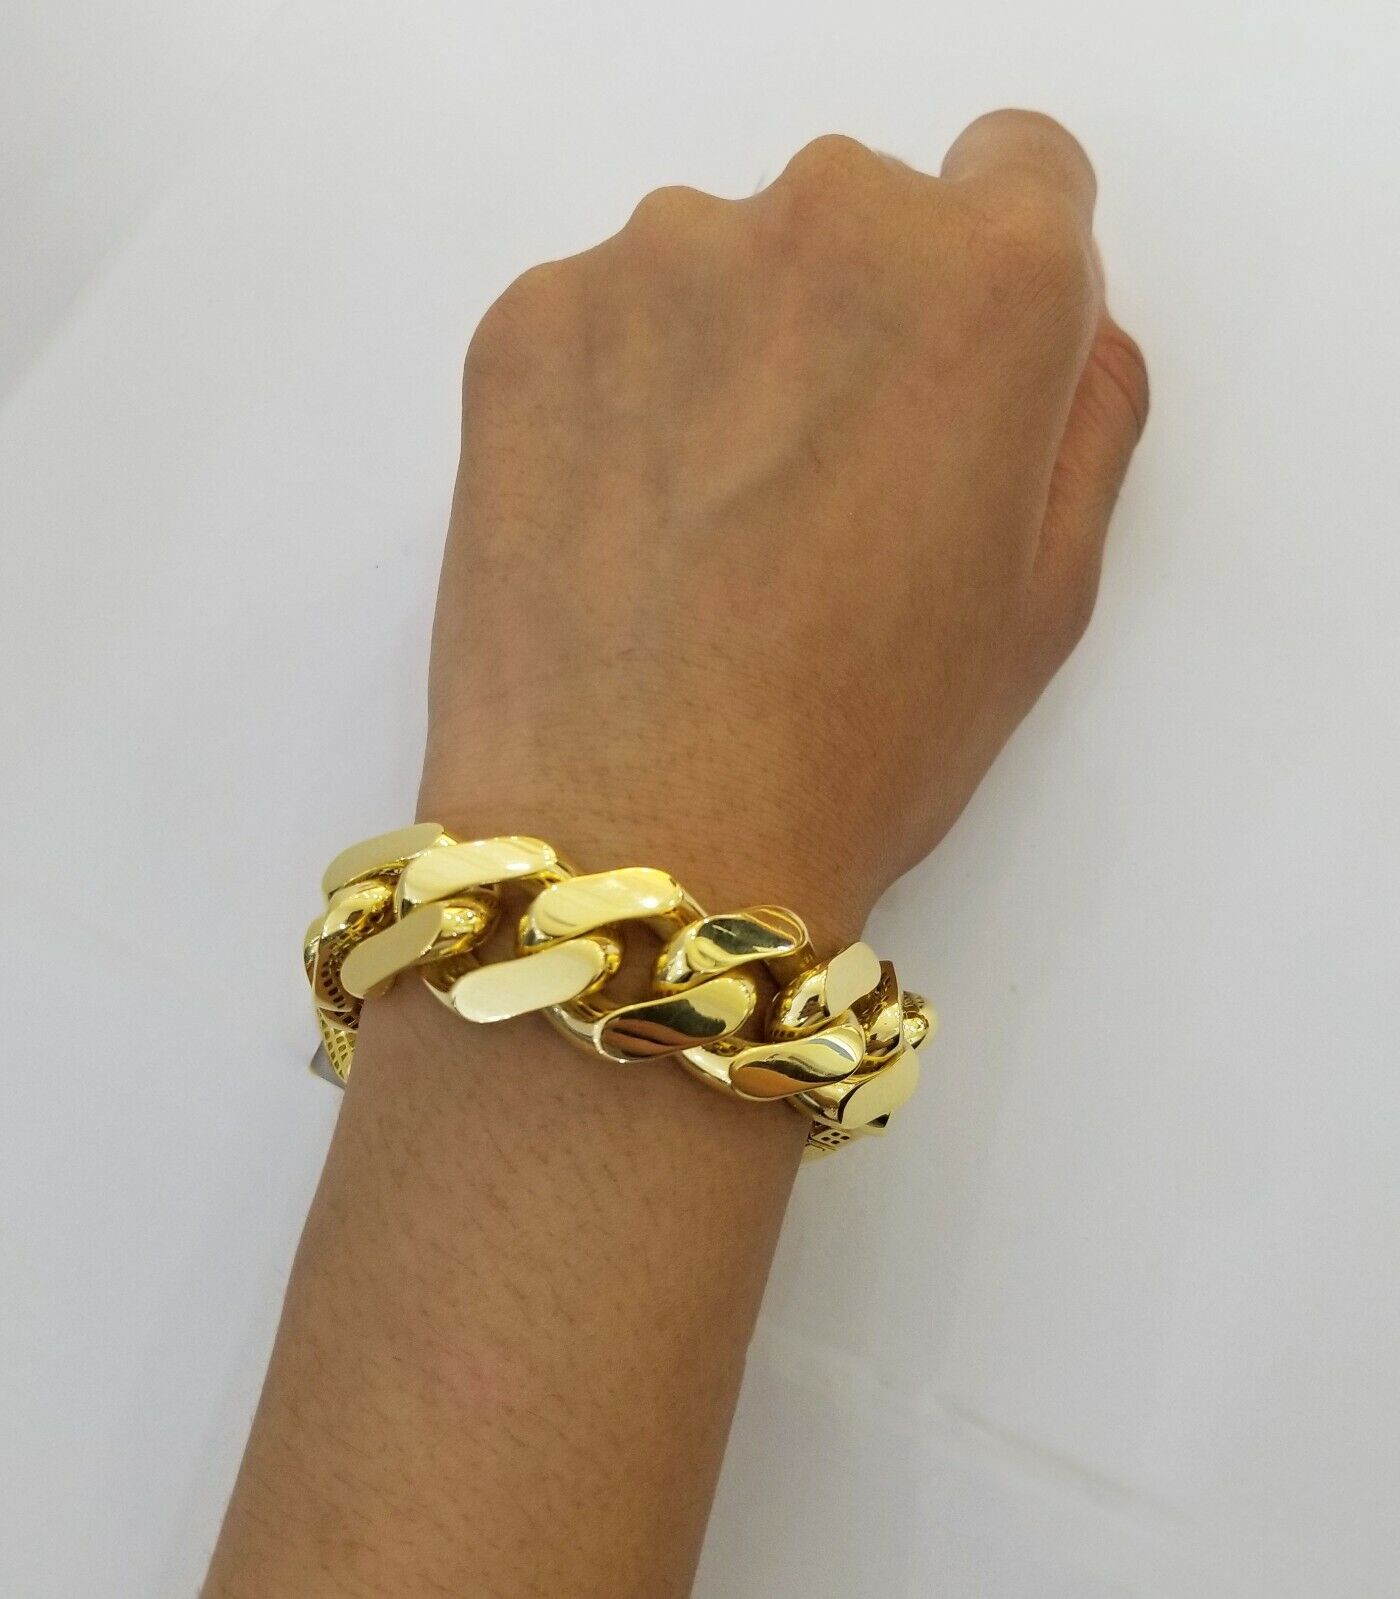 Real 10K Gold Royal Monaco Miami Cuban Link 9" Chain Bracelet w Box Clasp 20mm